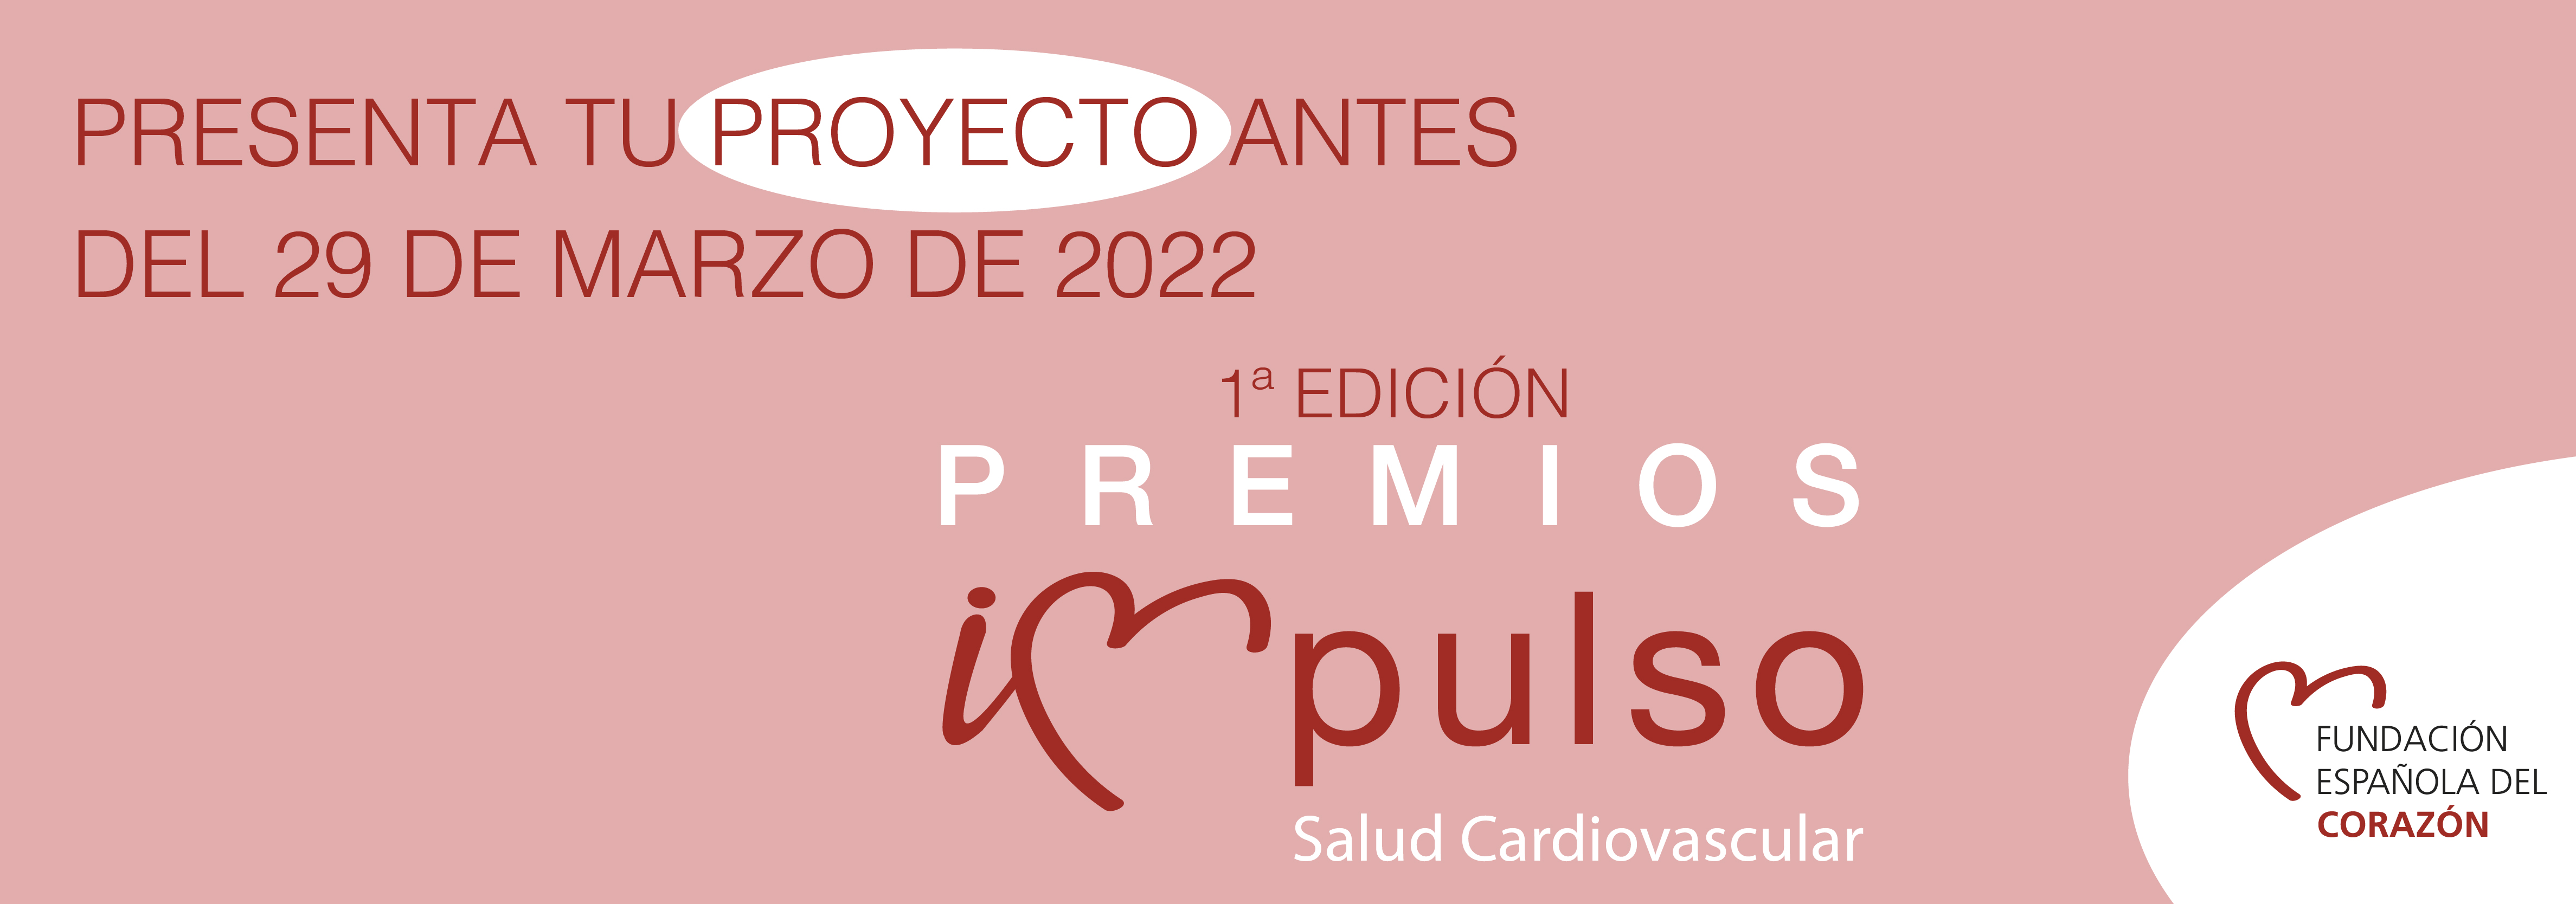 Salud Cardiovascular Fundación Española Del Corazón 0547